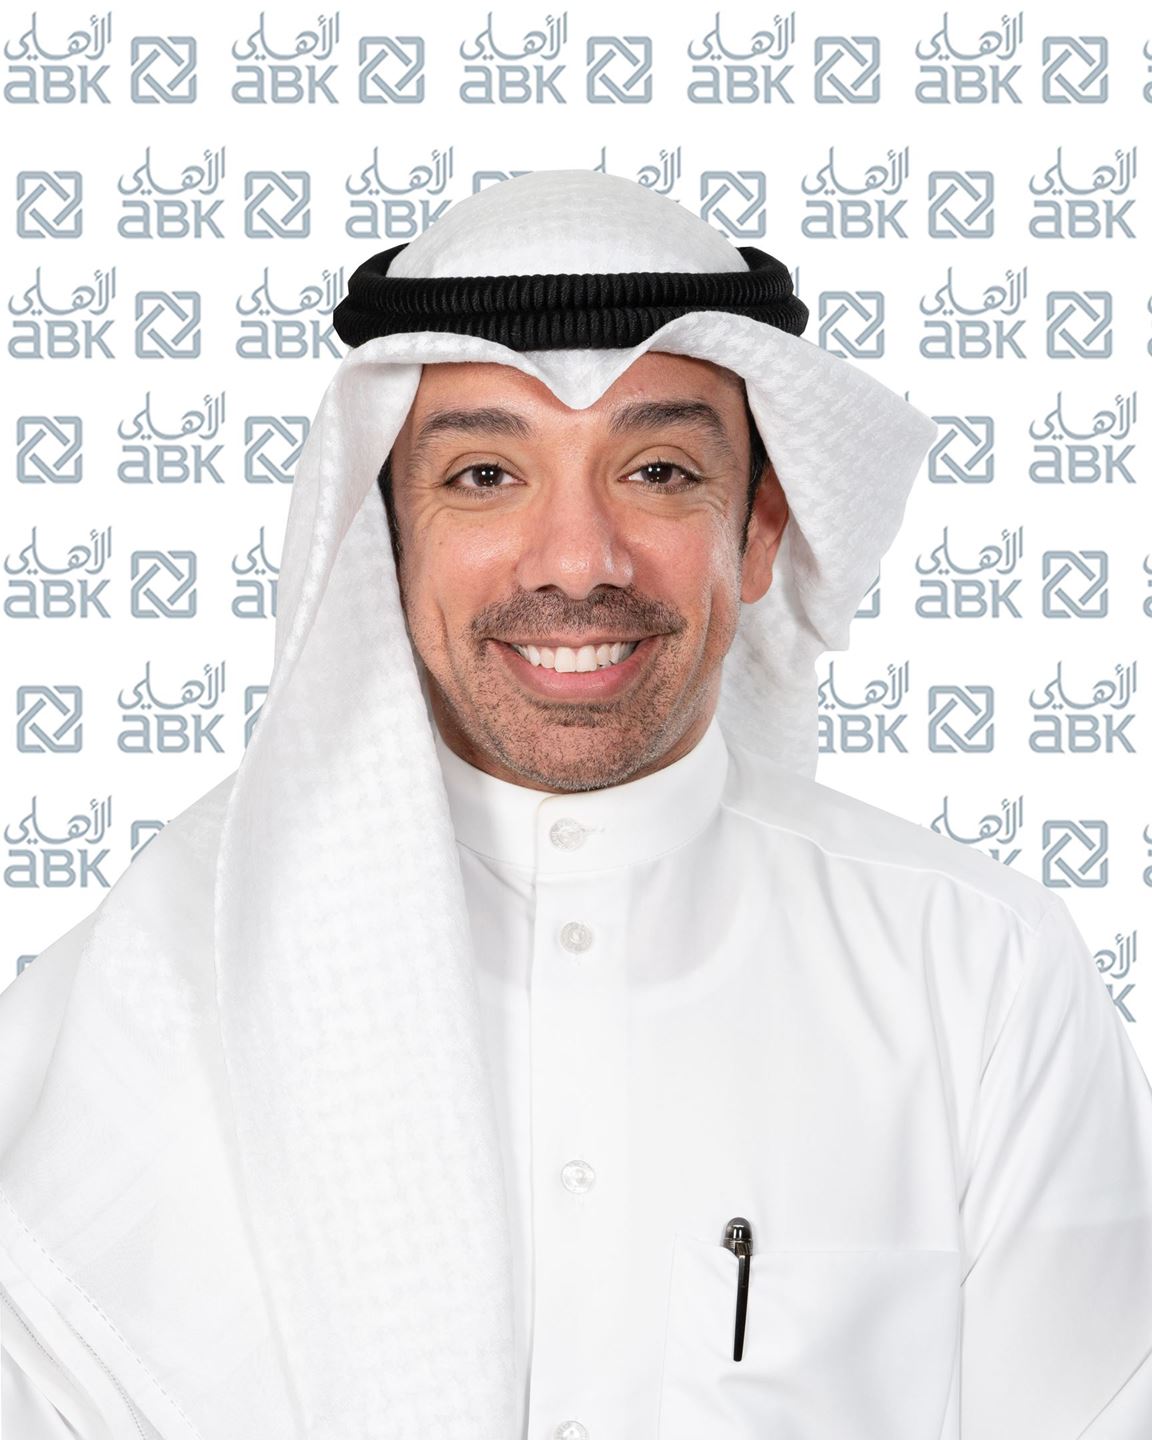 السيد/ صقر ال بن علي رئيس وحدة الإتصالات والعلاقات الخارجية بالإنابة